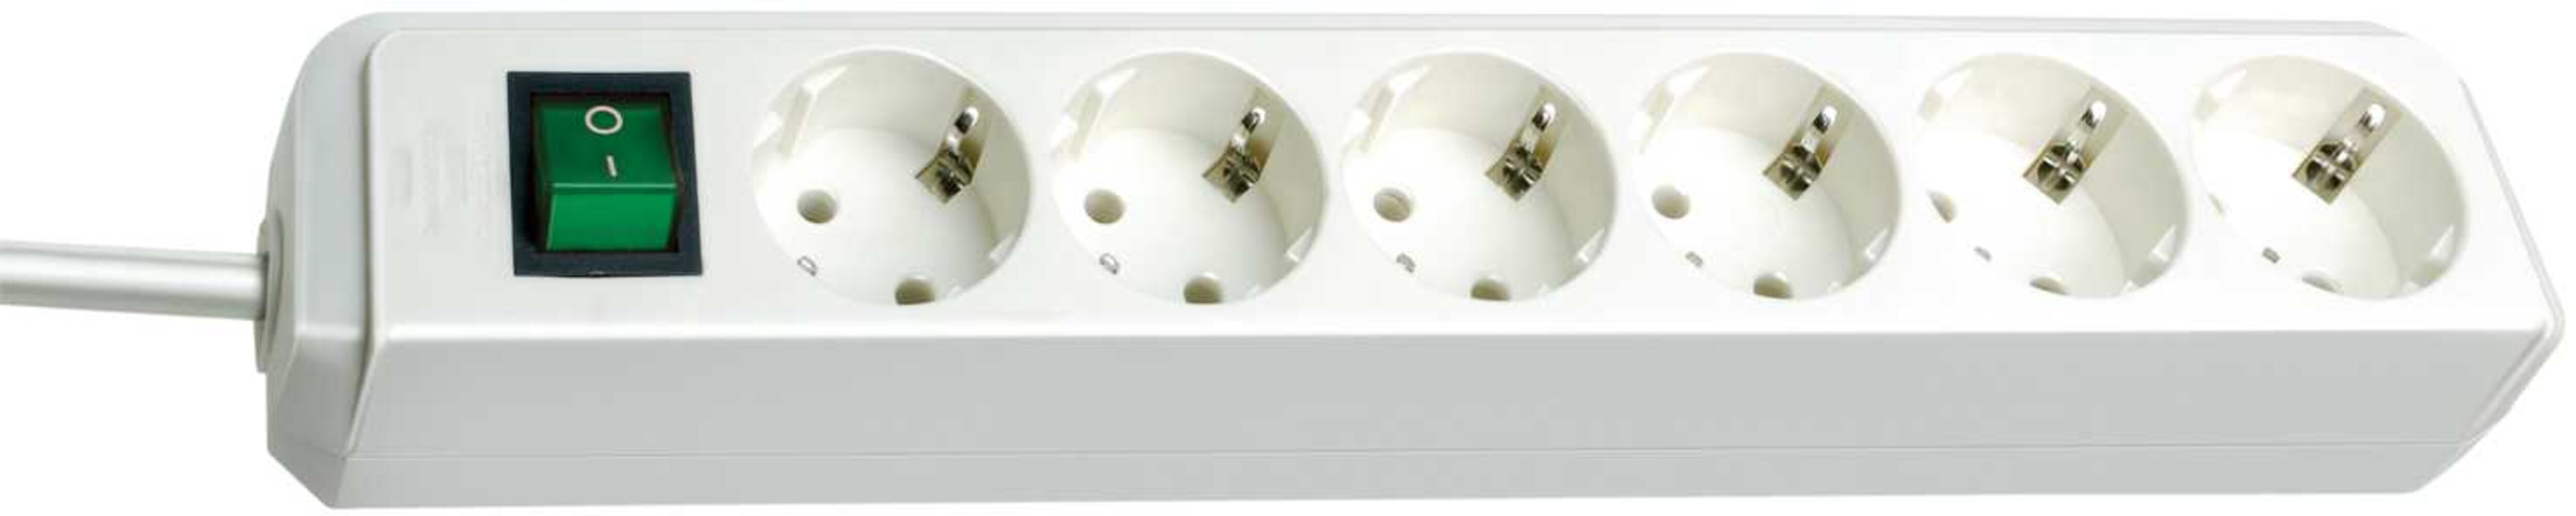 Weiße, multifunktionale Steckdosenleiste von Brennenstuhl mit integriertem Schalter